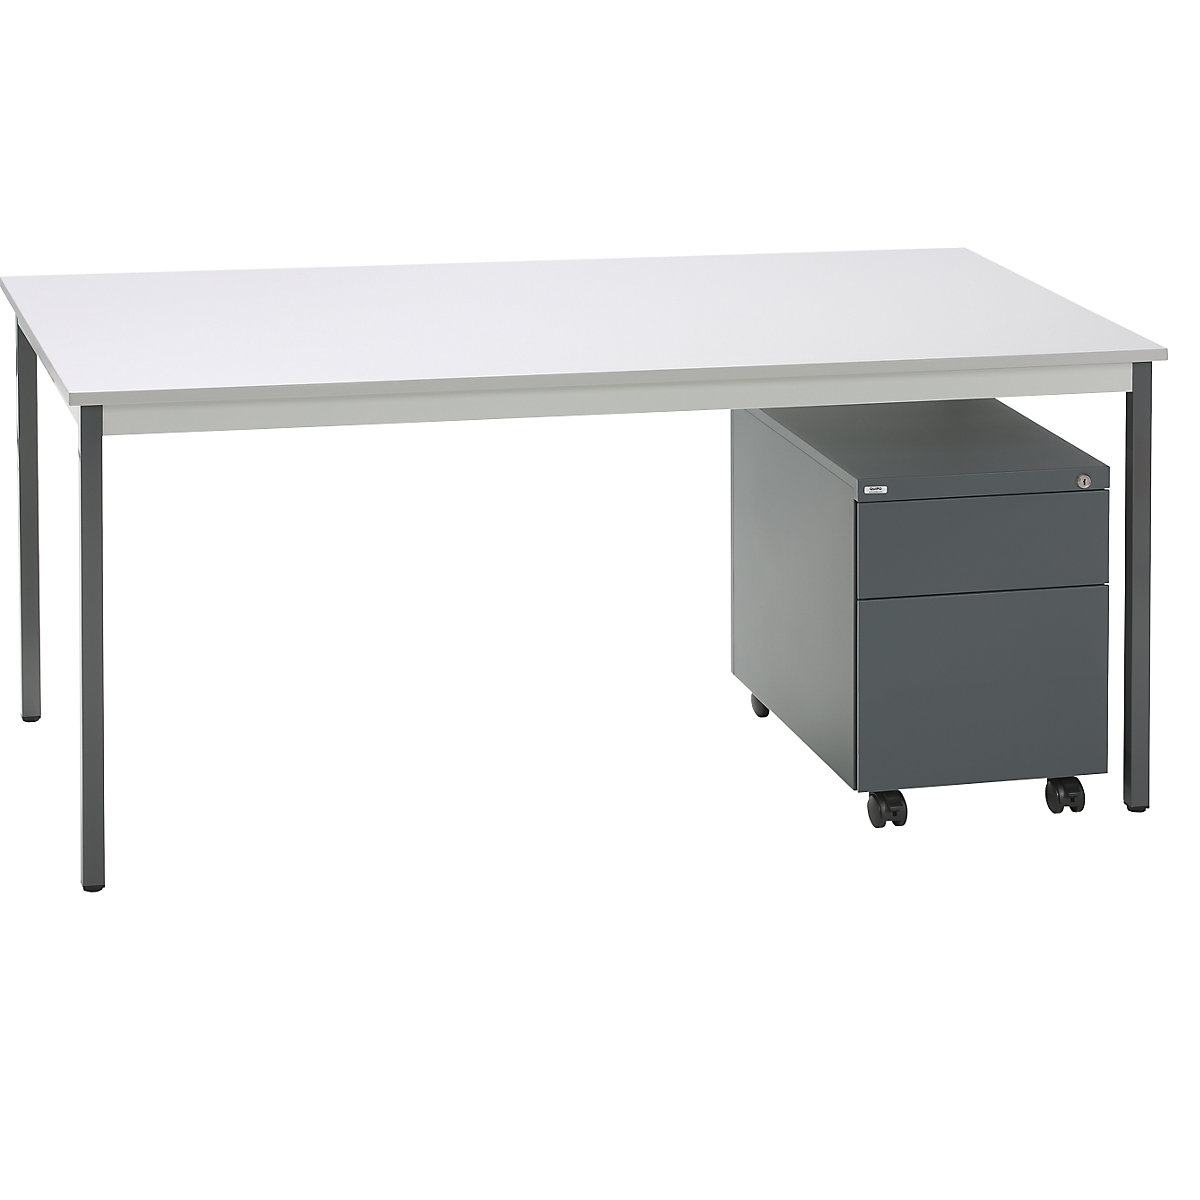 SATO complete office – eurokraft basic, desk + mobile pedestal, 790 mm deep, mobile pedestal with drawer and suspension file drawer-6